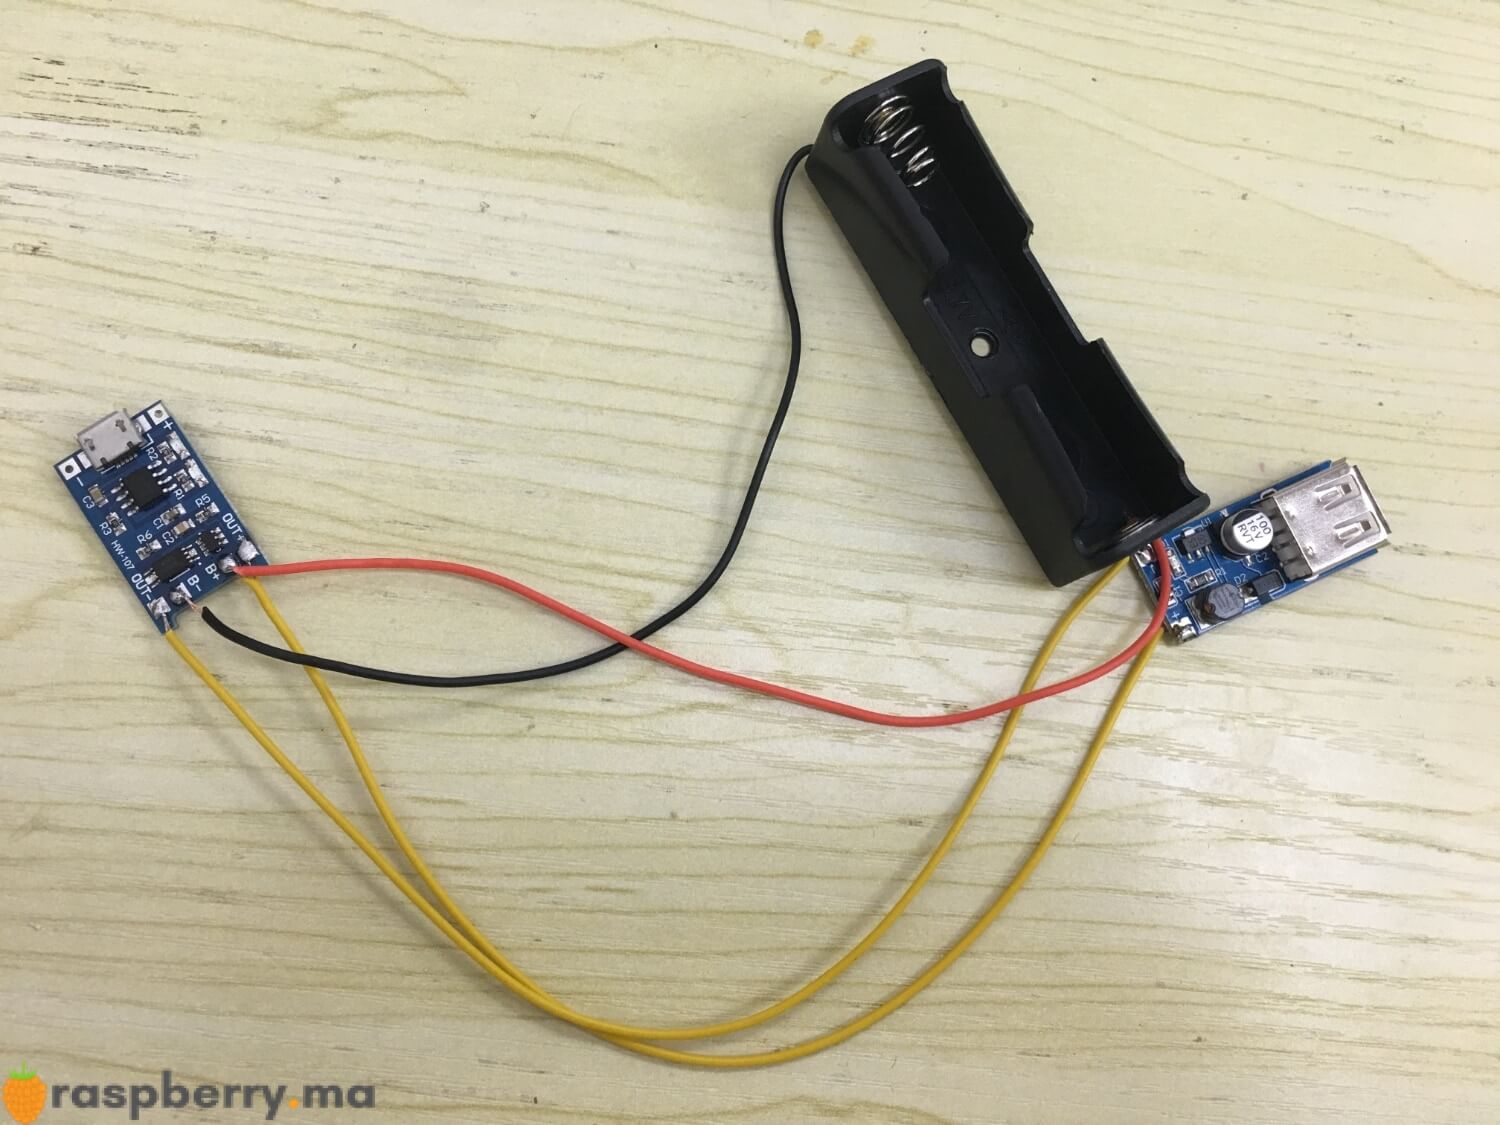 Kit chargeur de batterie USB 5V 1A - Raspberry Pi Maroc